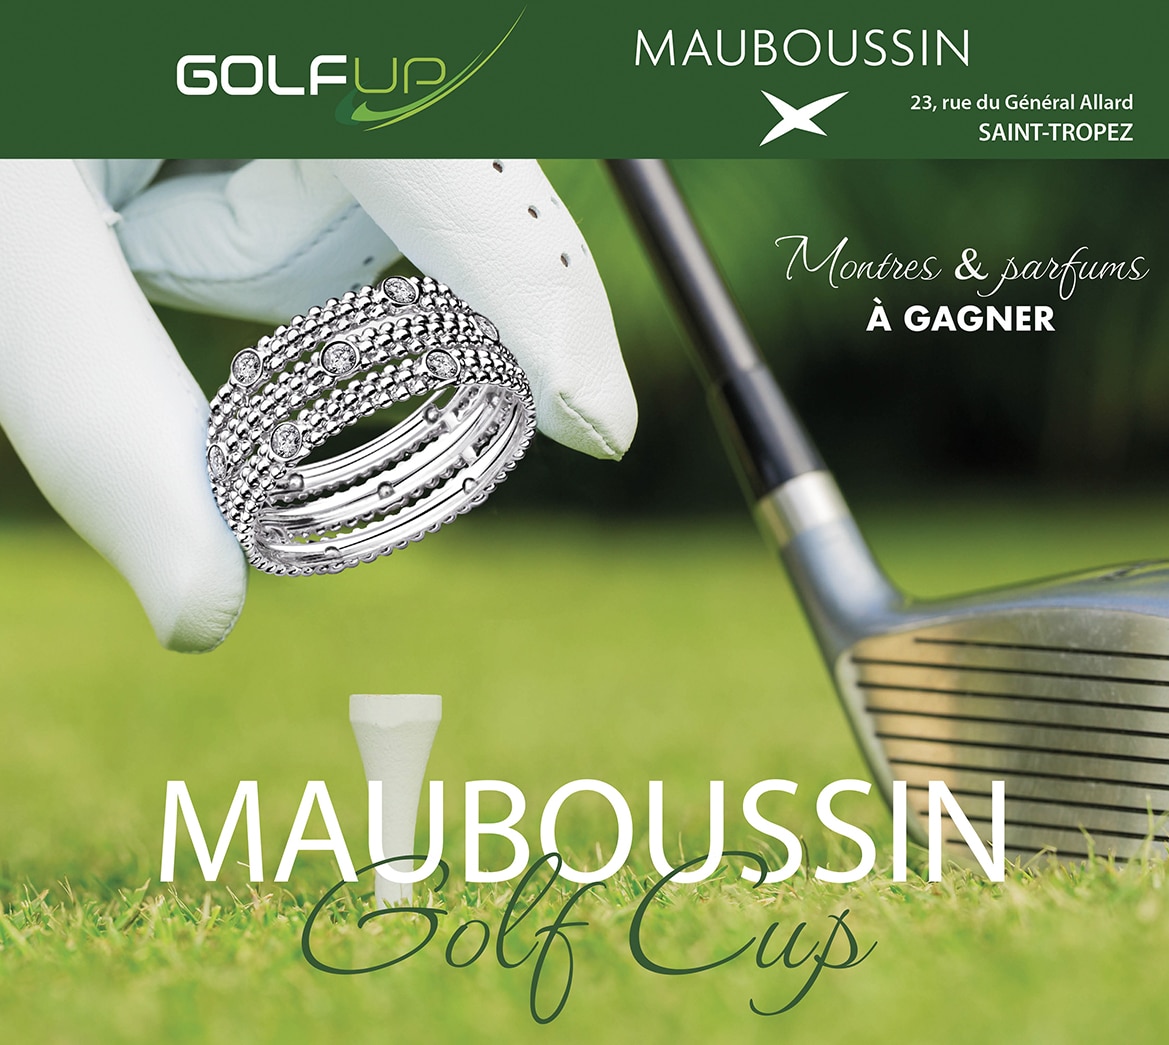 Mauboussin Golf Cup